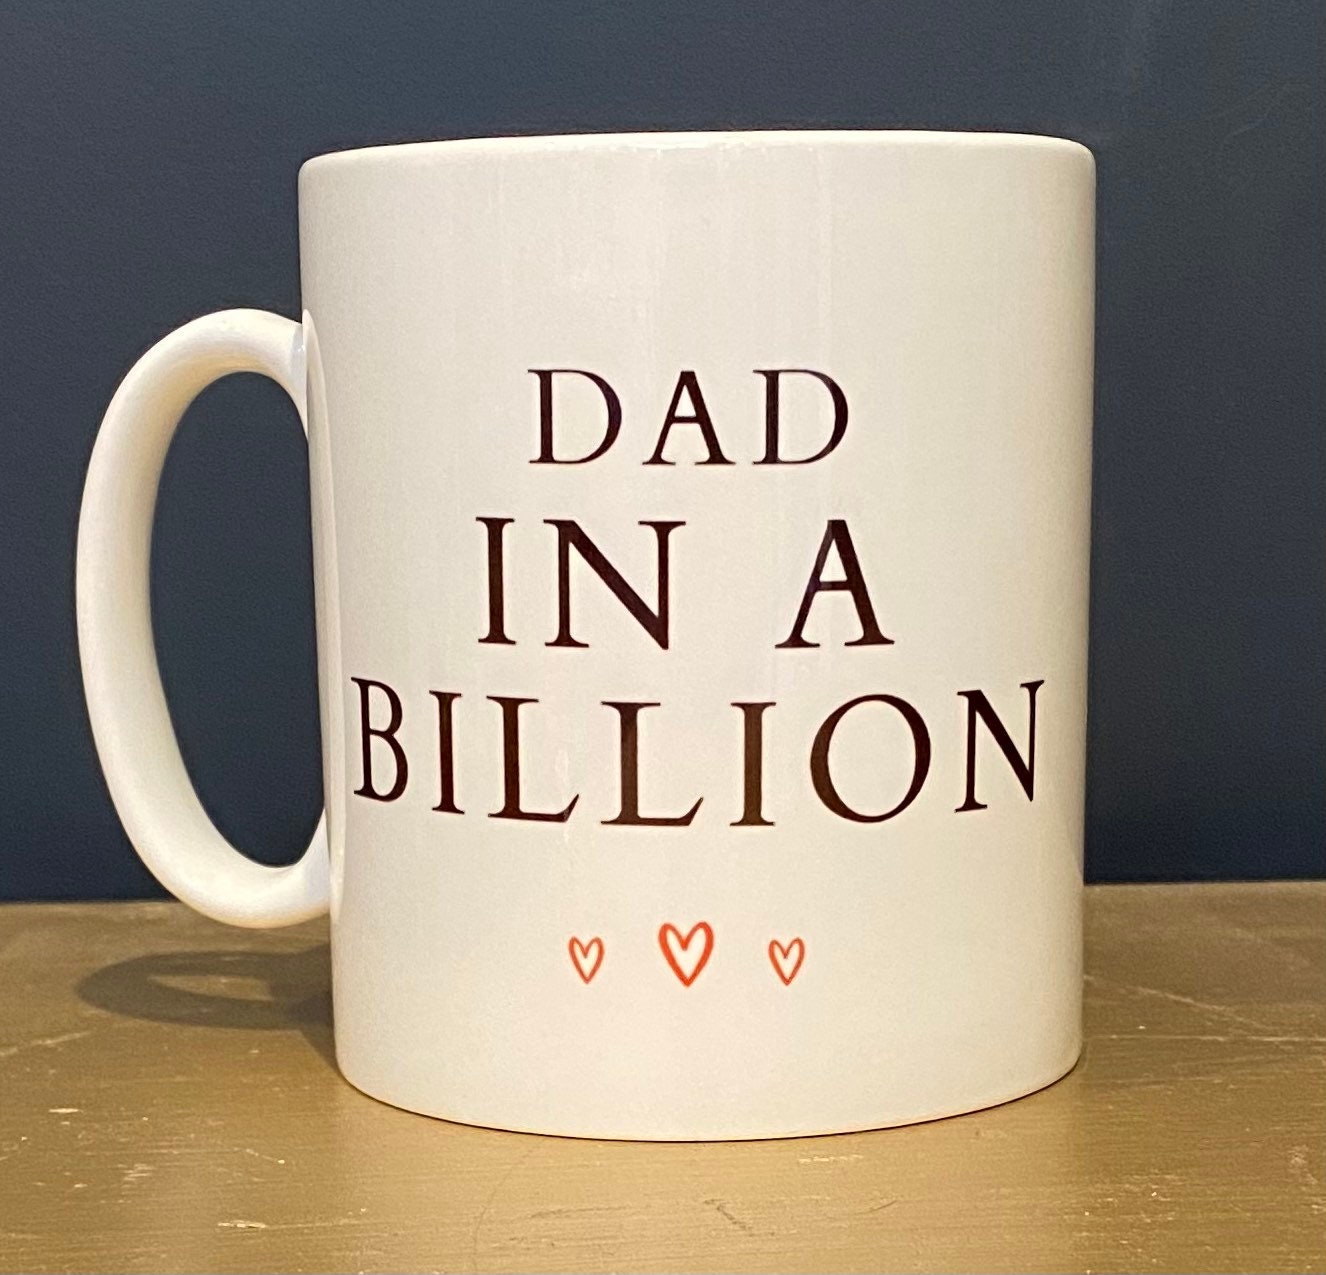 Dad in a billion mug